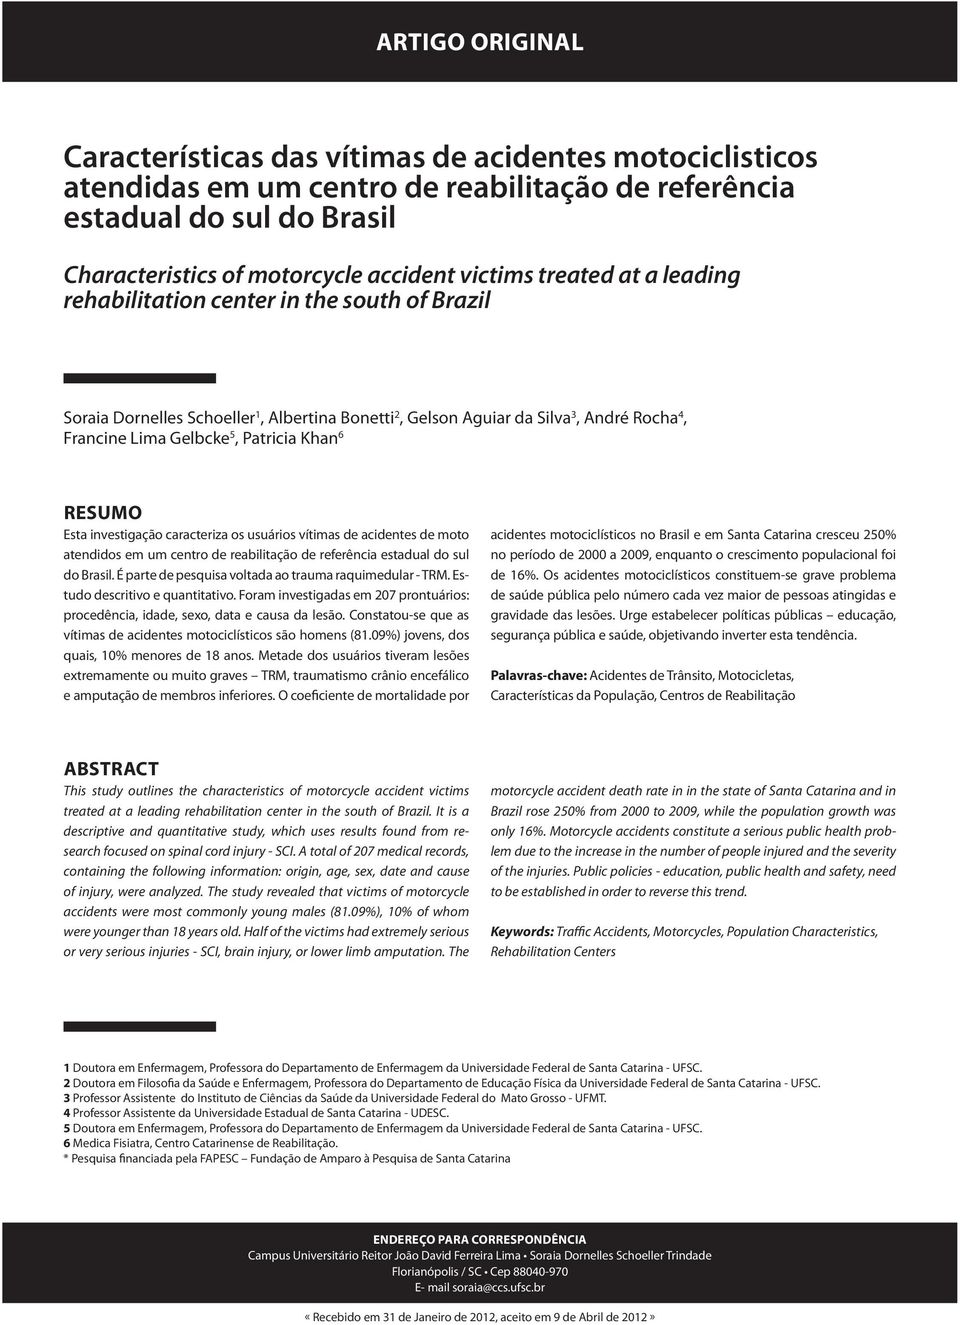 RESUMO Esta investigação caracteriza os usuários vítimas de acidentes de moto atendidos em um centro de reabilitação de referência estadual do sul do Brasil.